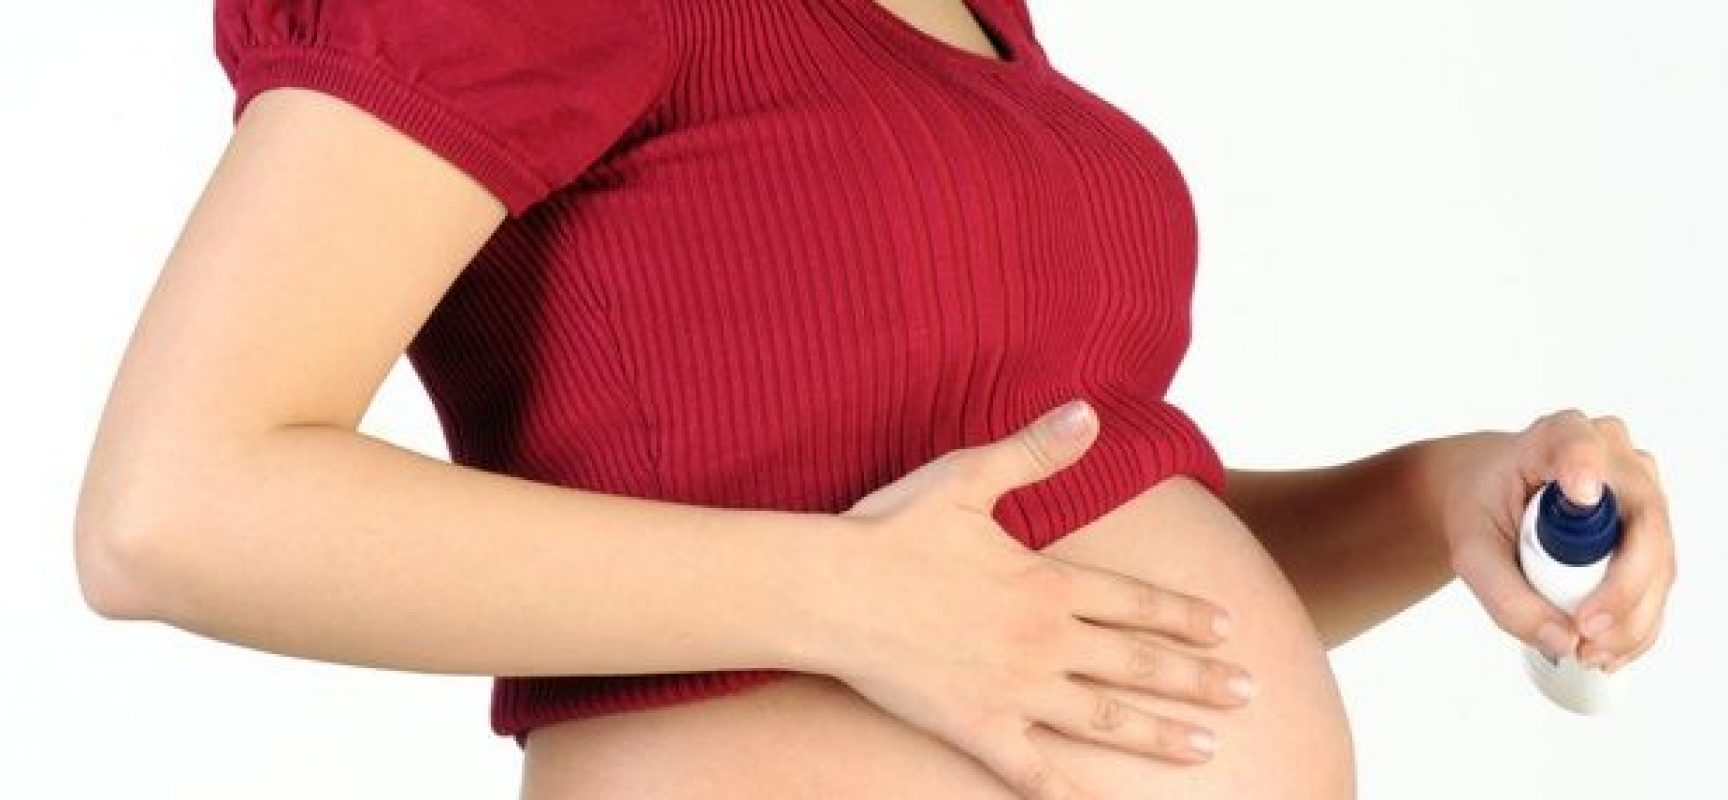 Governo distribuirá repelentes para grávidas baianas a partir do dia 15